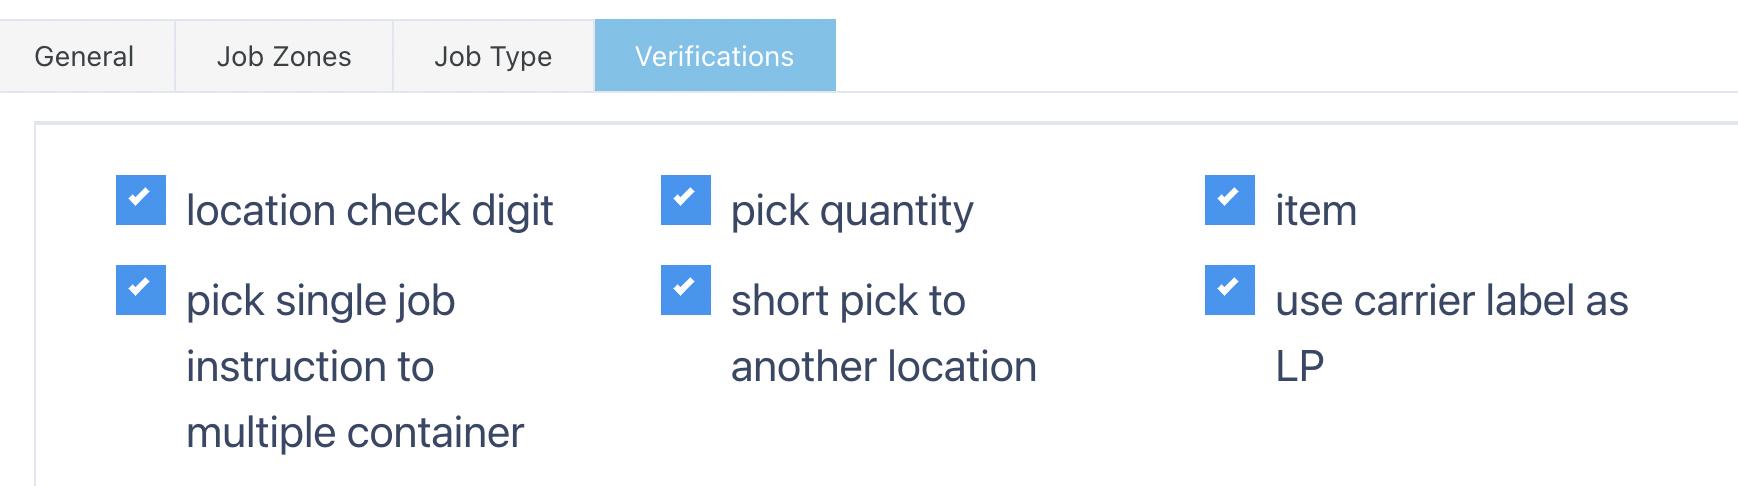 select verifications